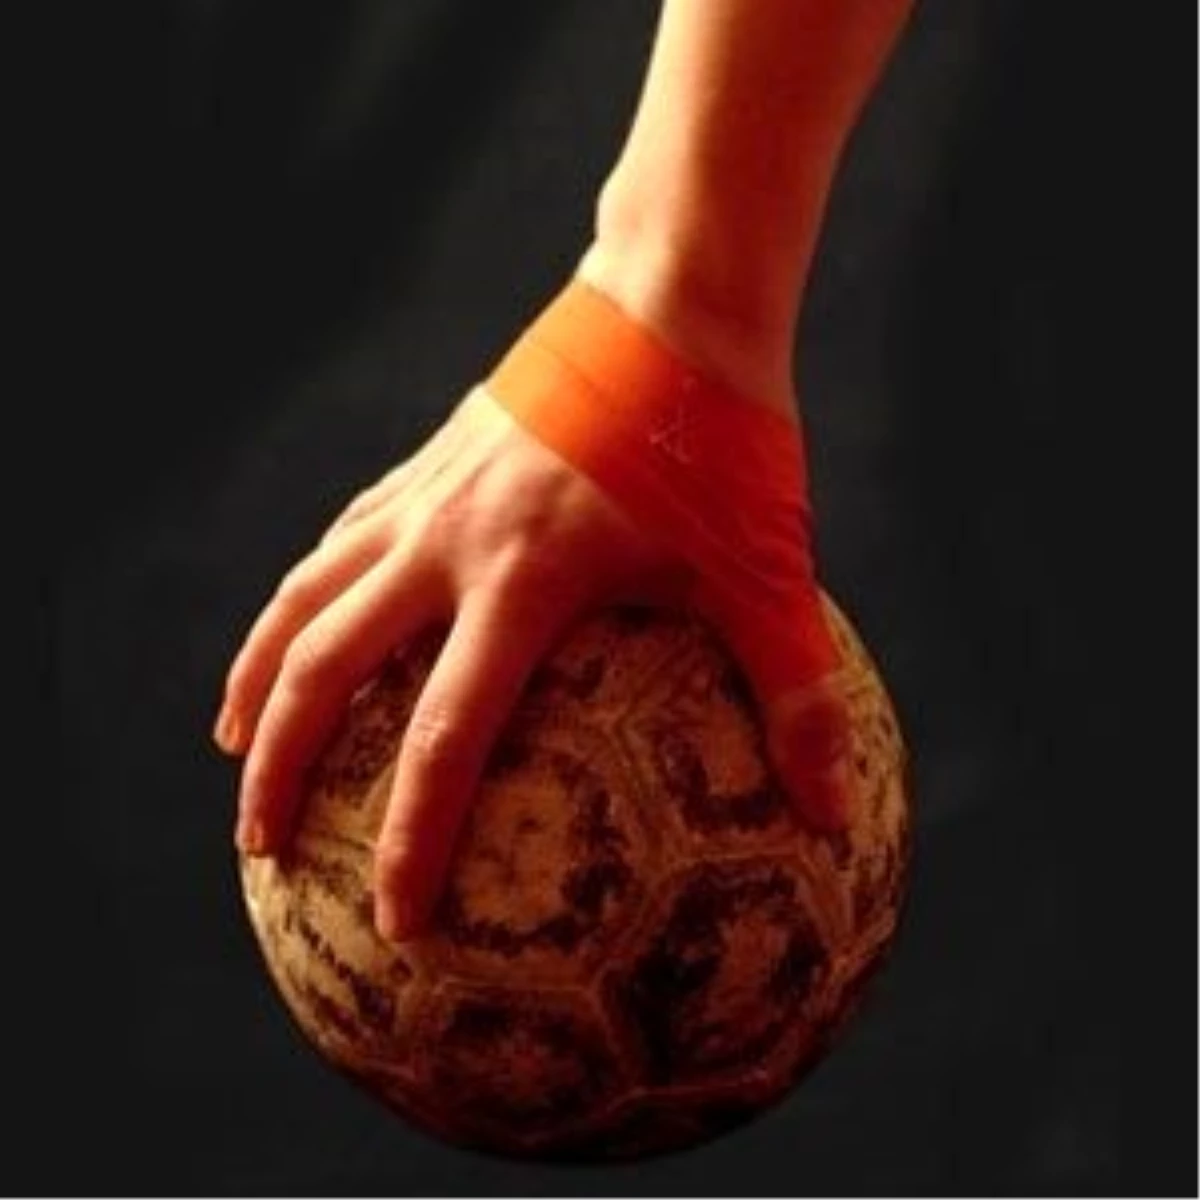 Hentbol: Bayanlar Türkiye Kupası